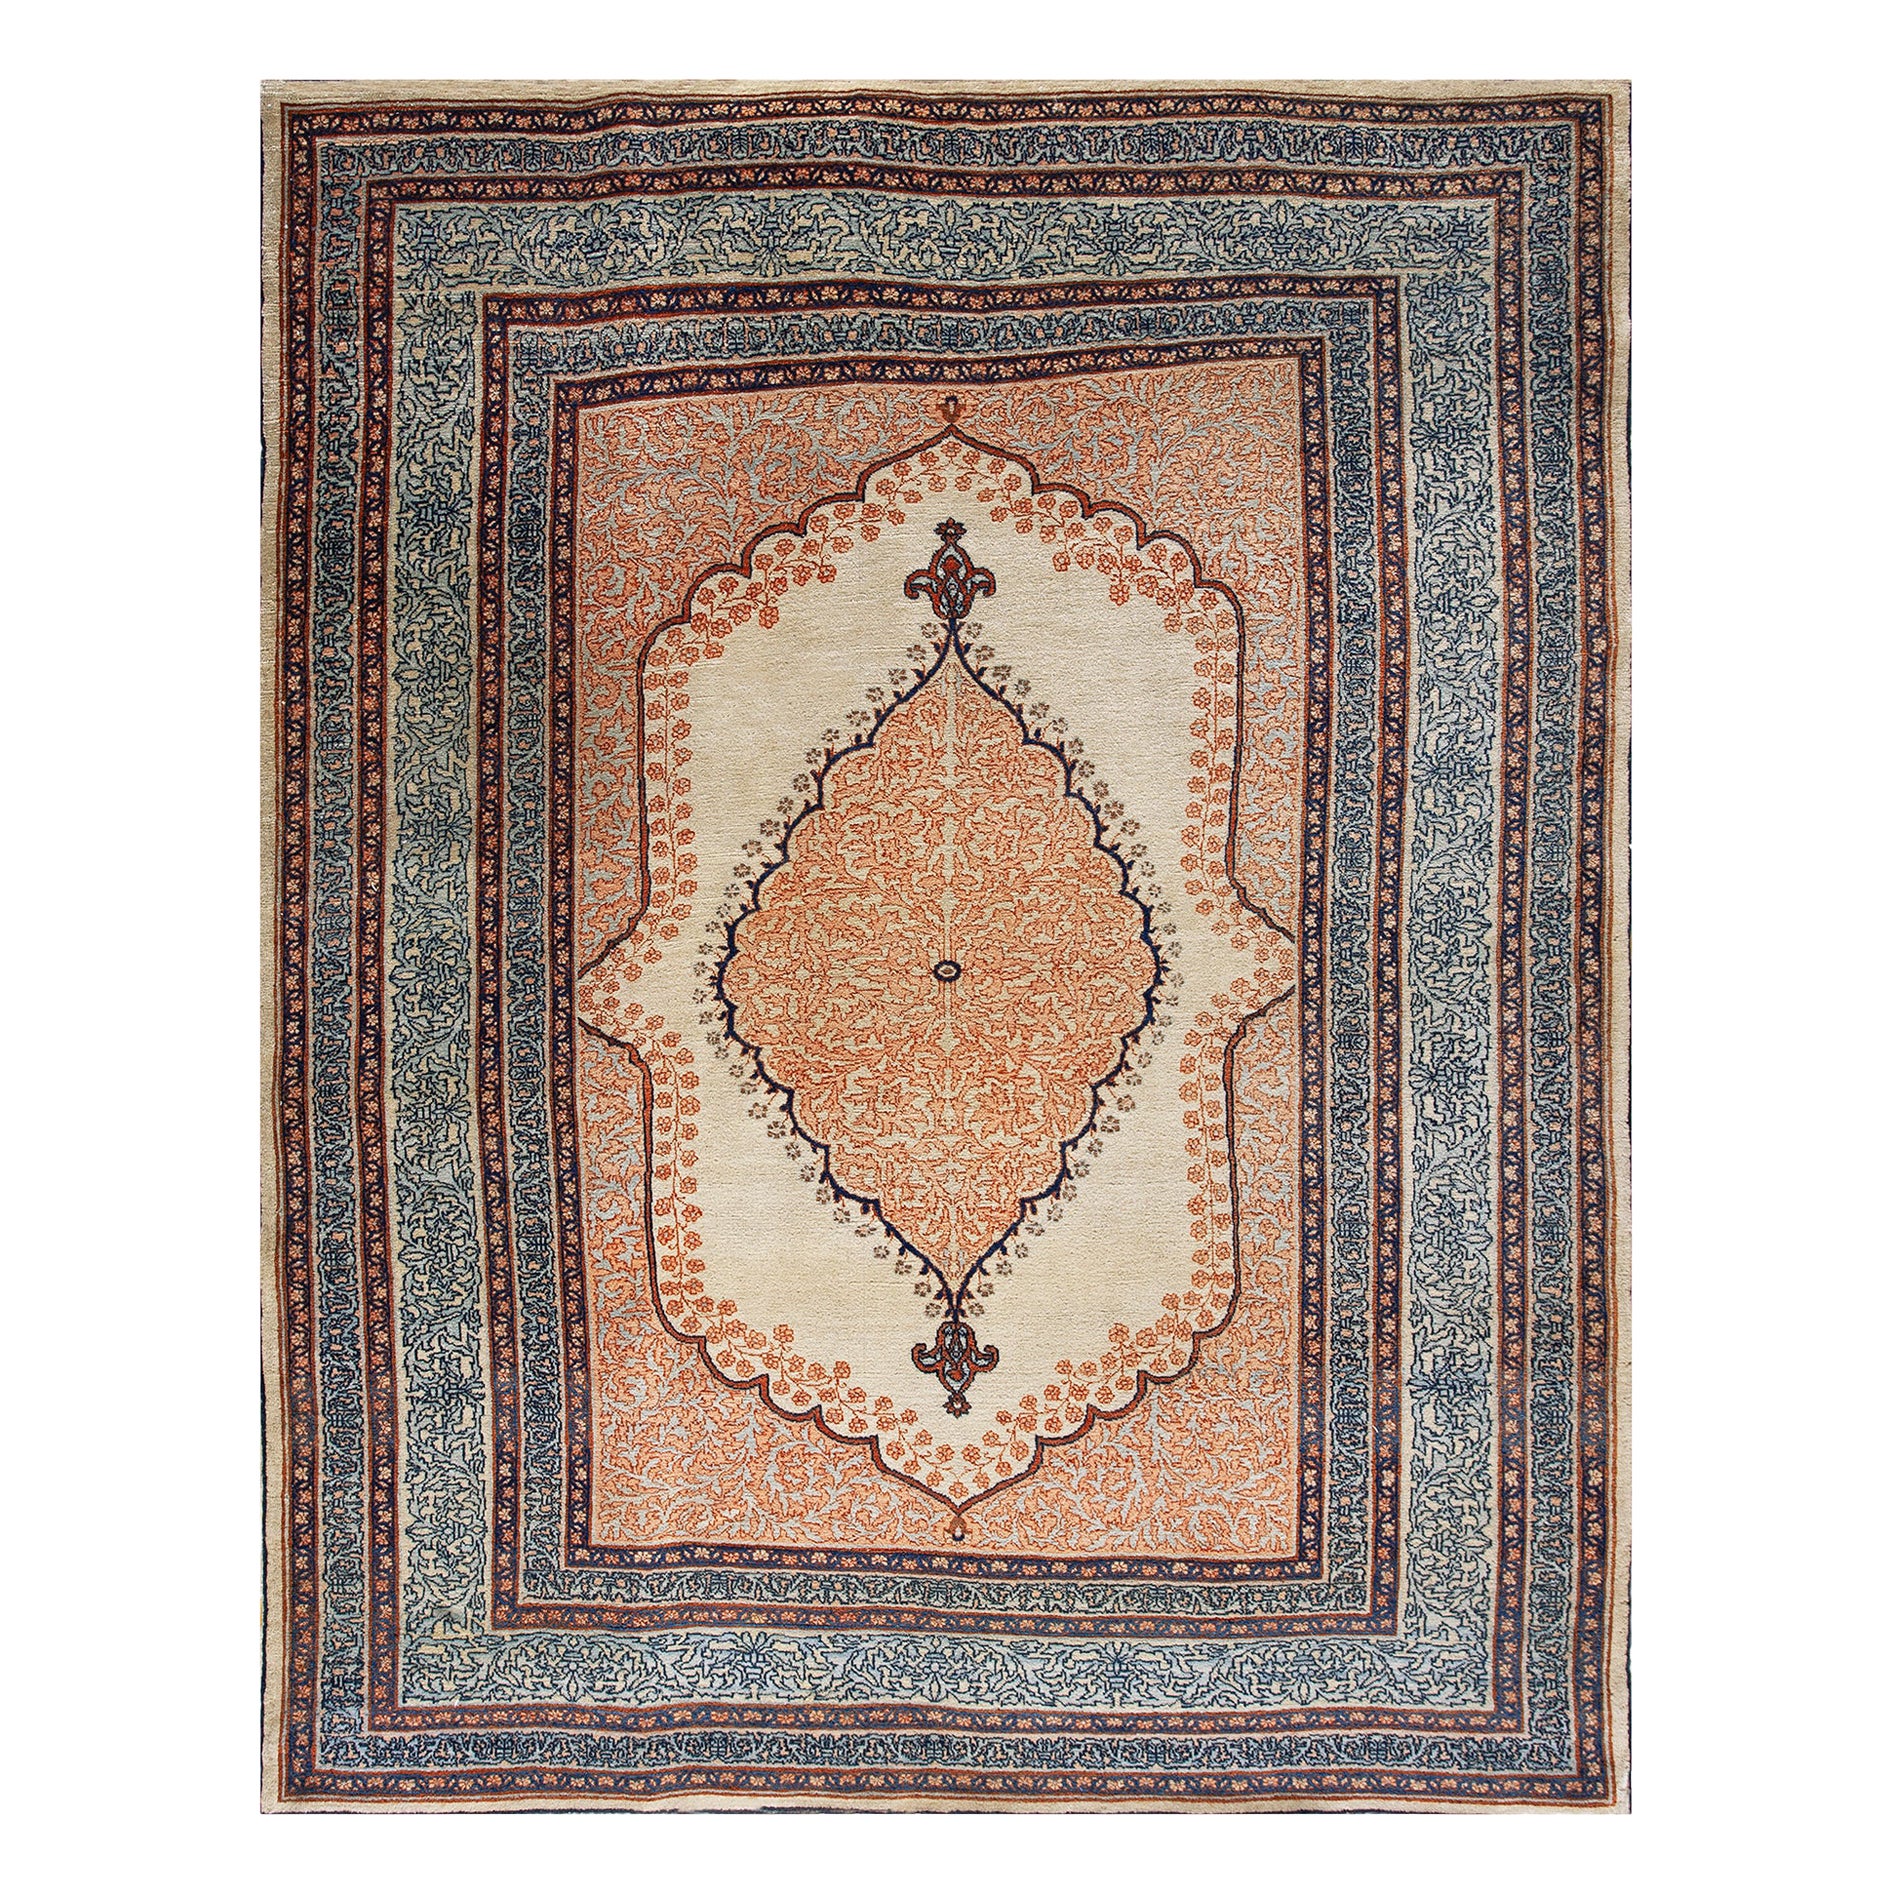 19th Century Persian Haji Jalili Tabriz Carpet ( 4'8" x 6' - 143 x 183 )